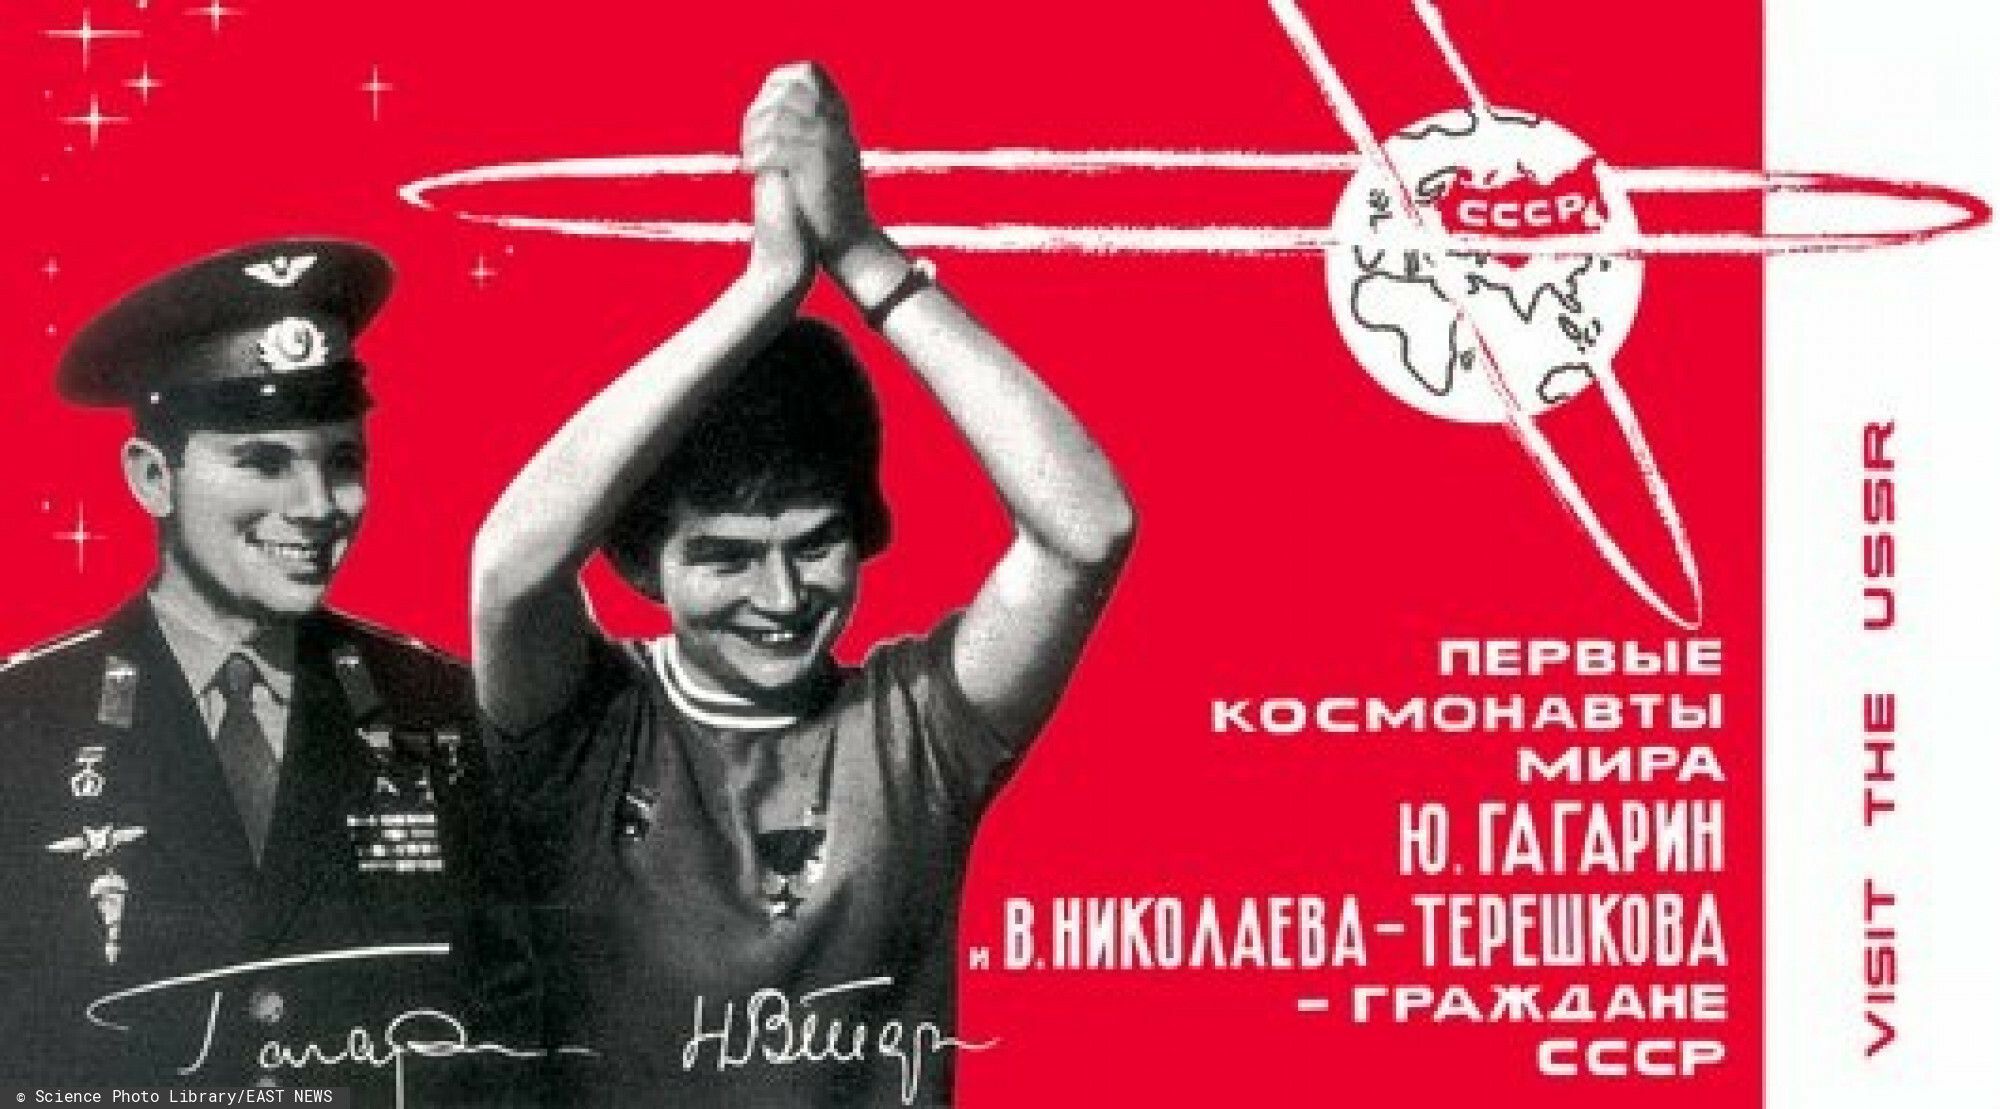 Walentina Tiereszkowa straciła honorowe obywatelstwo za poglądy polityczne